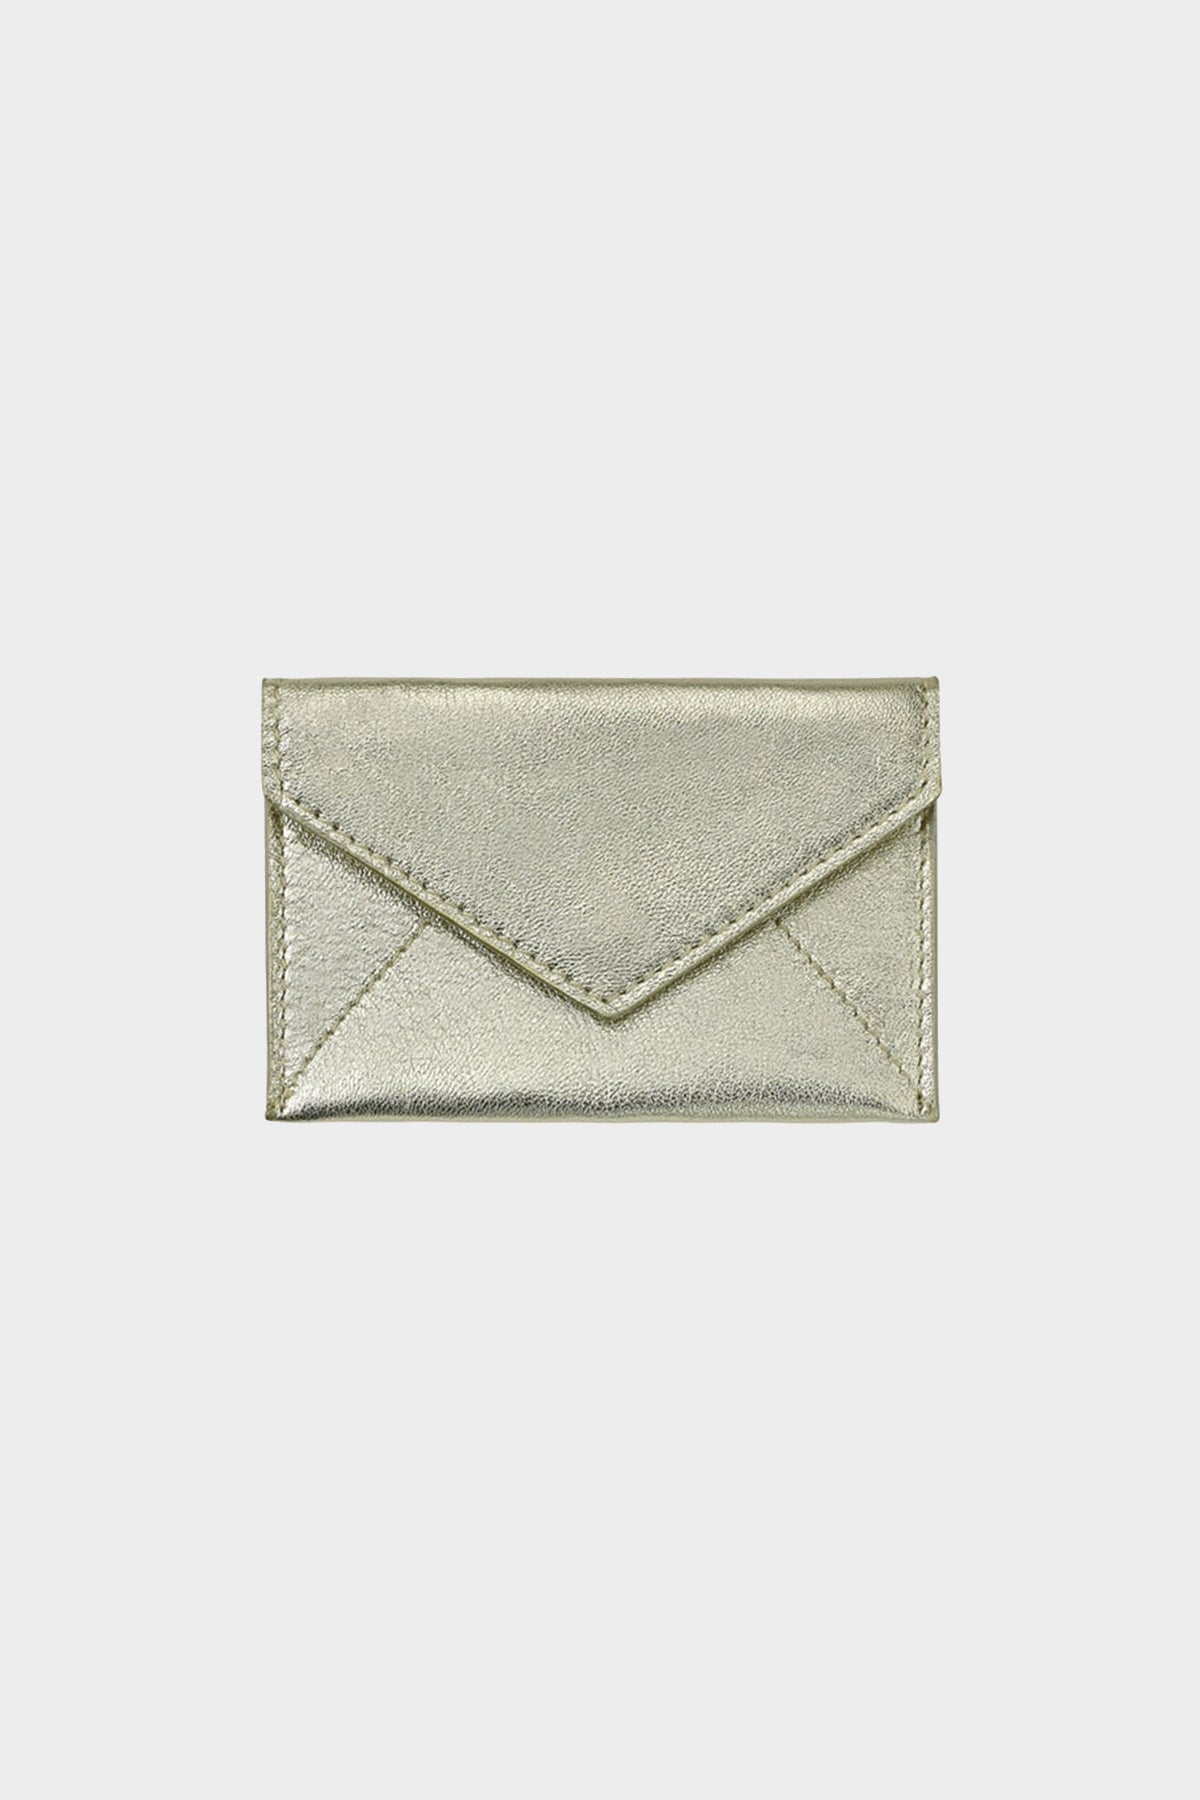 White Gold Metallic Goatskin Mini Envelope - shop-olivia.com